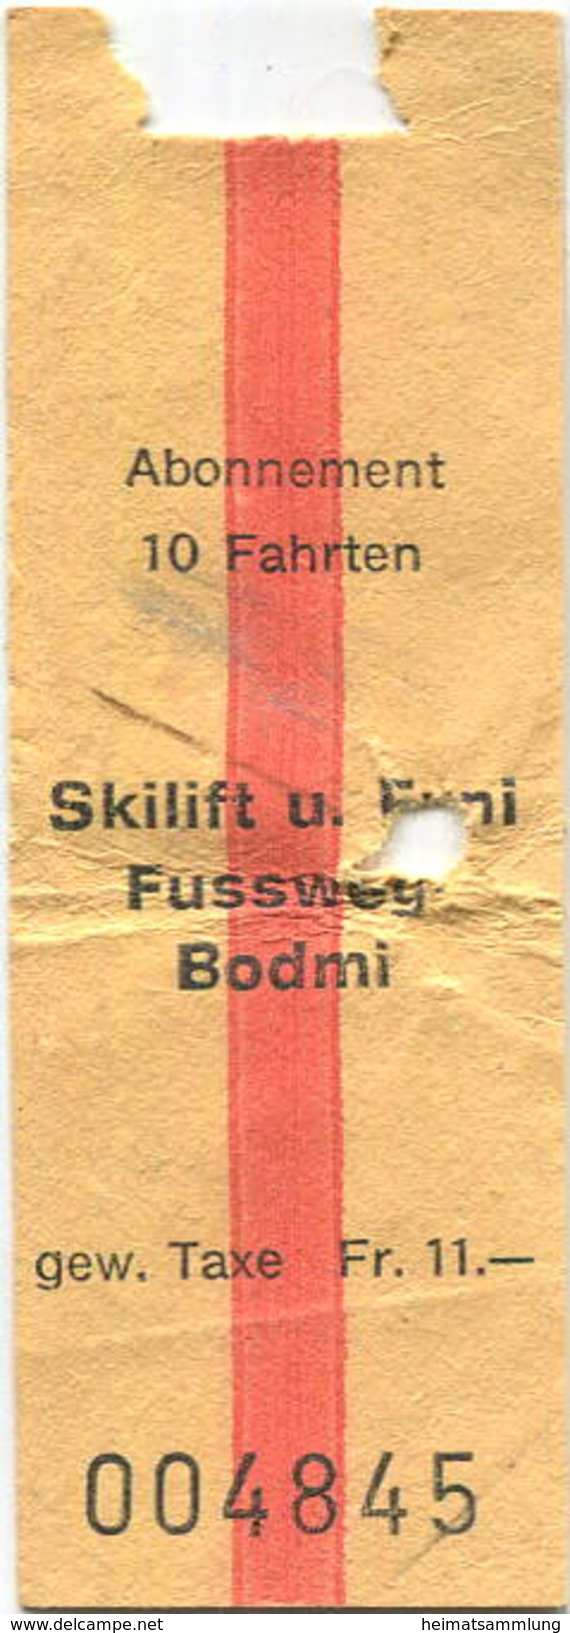 Schweiz - Skilift Fussweg Bodmi - Europa